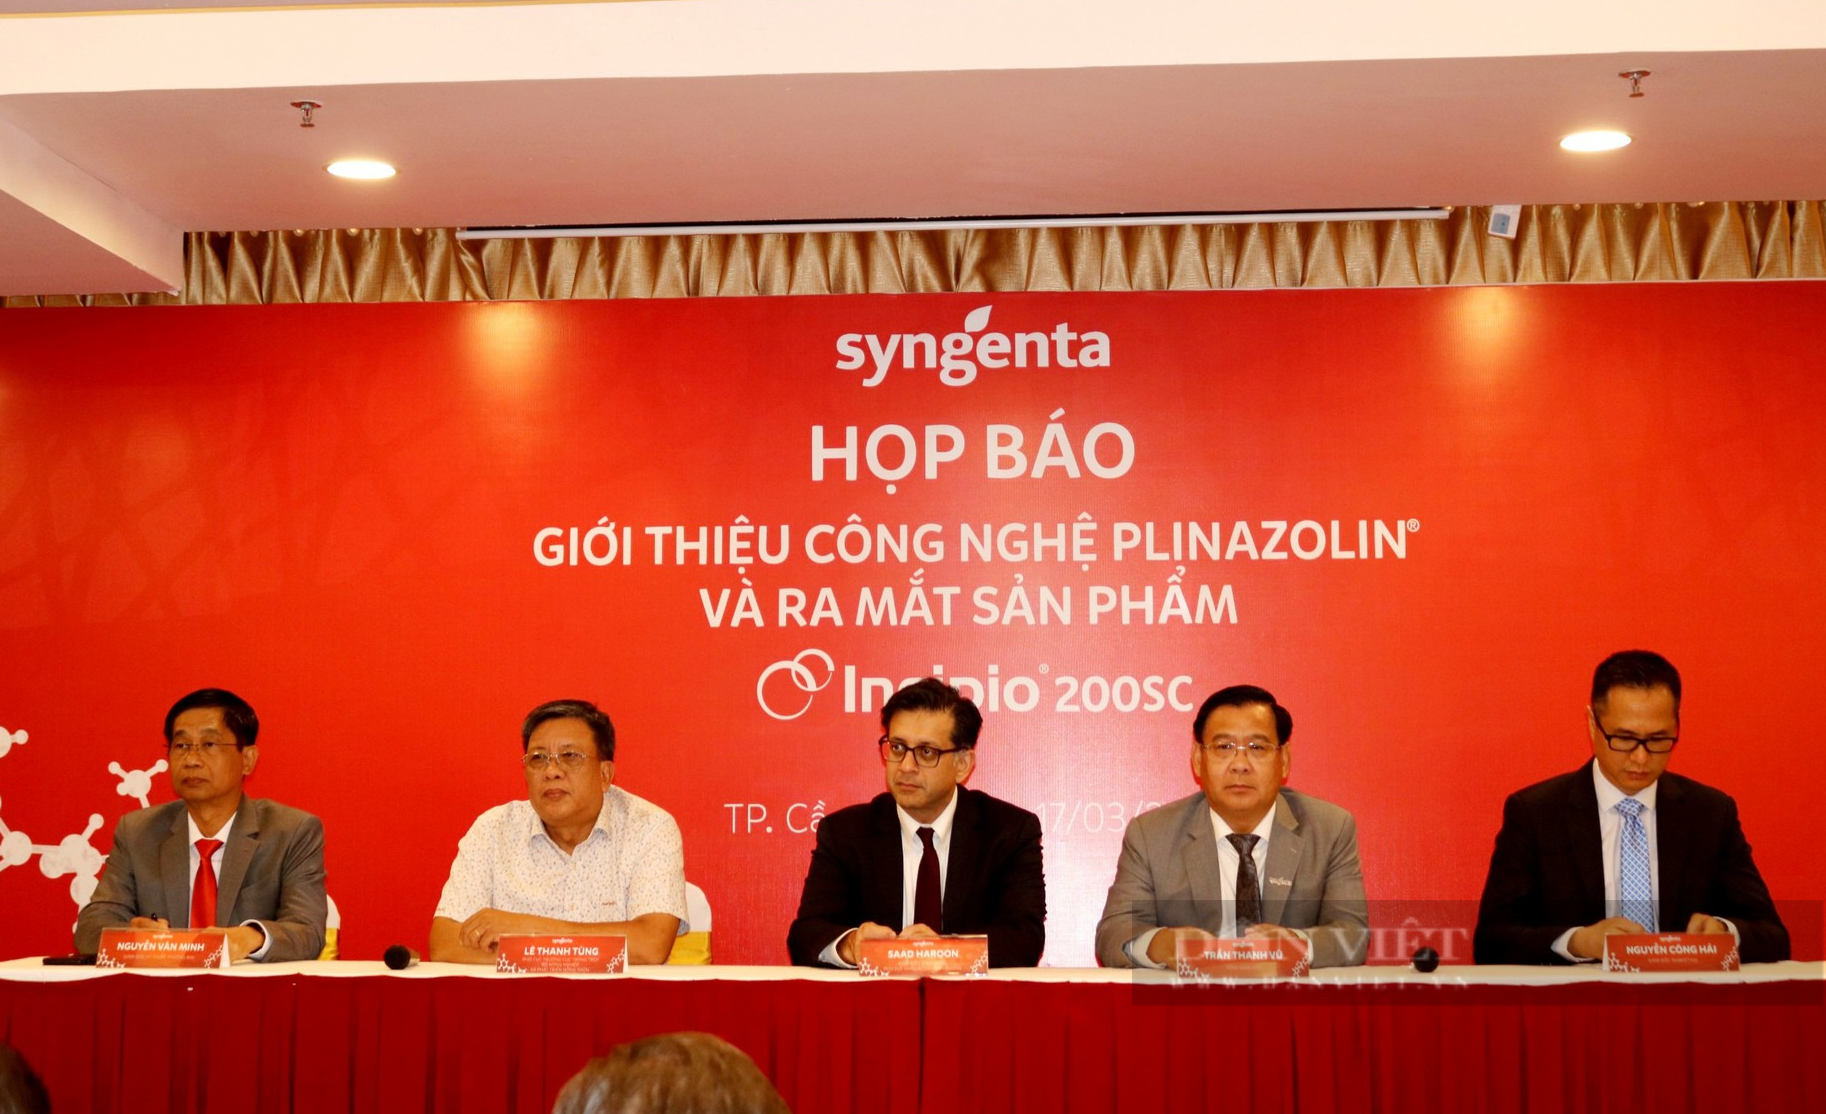 Syngenta Việt Nam chính thức ra mắt công nghệ mới phòng trừ sâu kháng thuốc, thân thiện với môi trường - Ảnh 1.